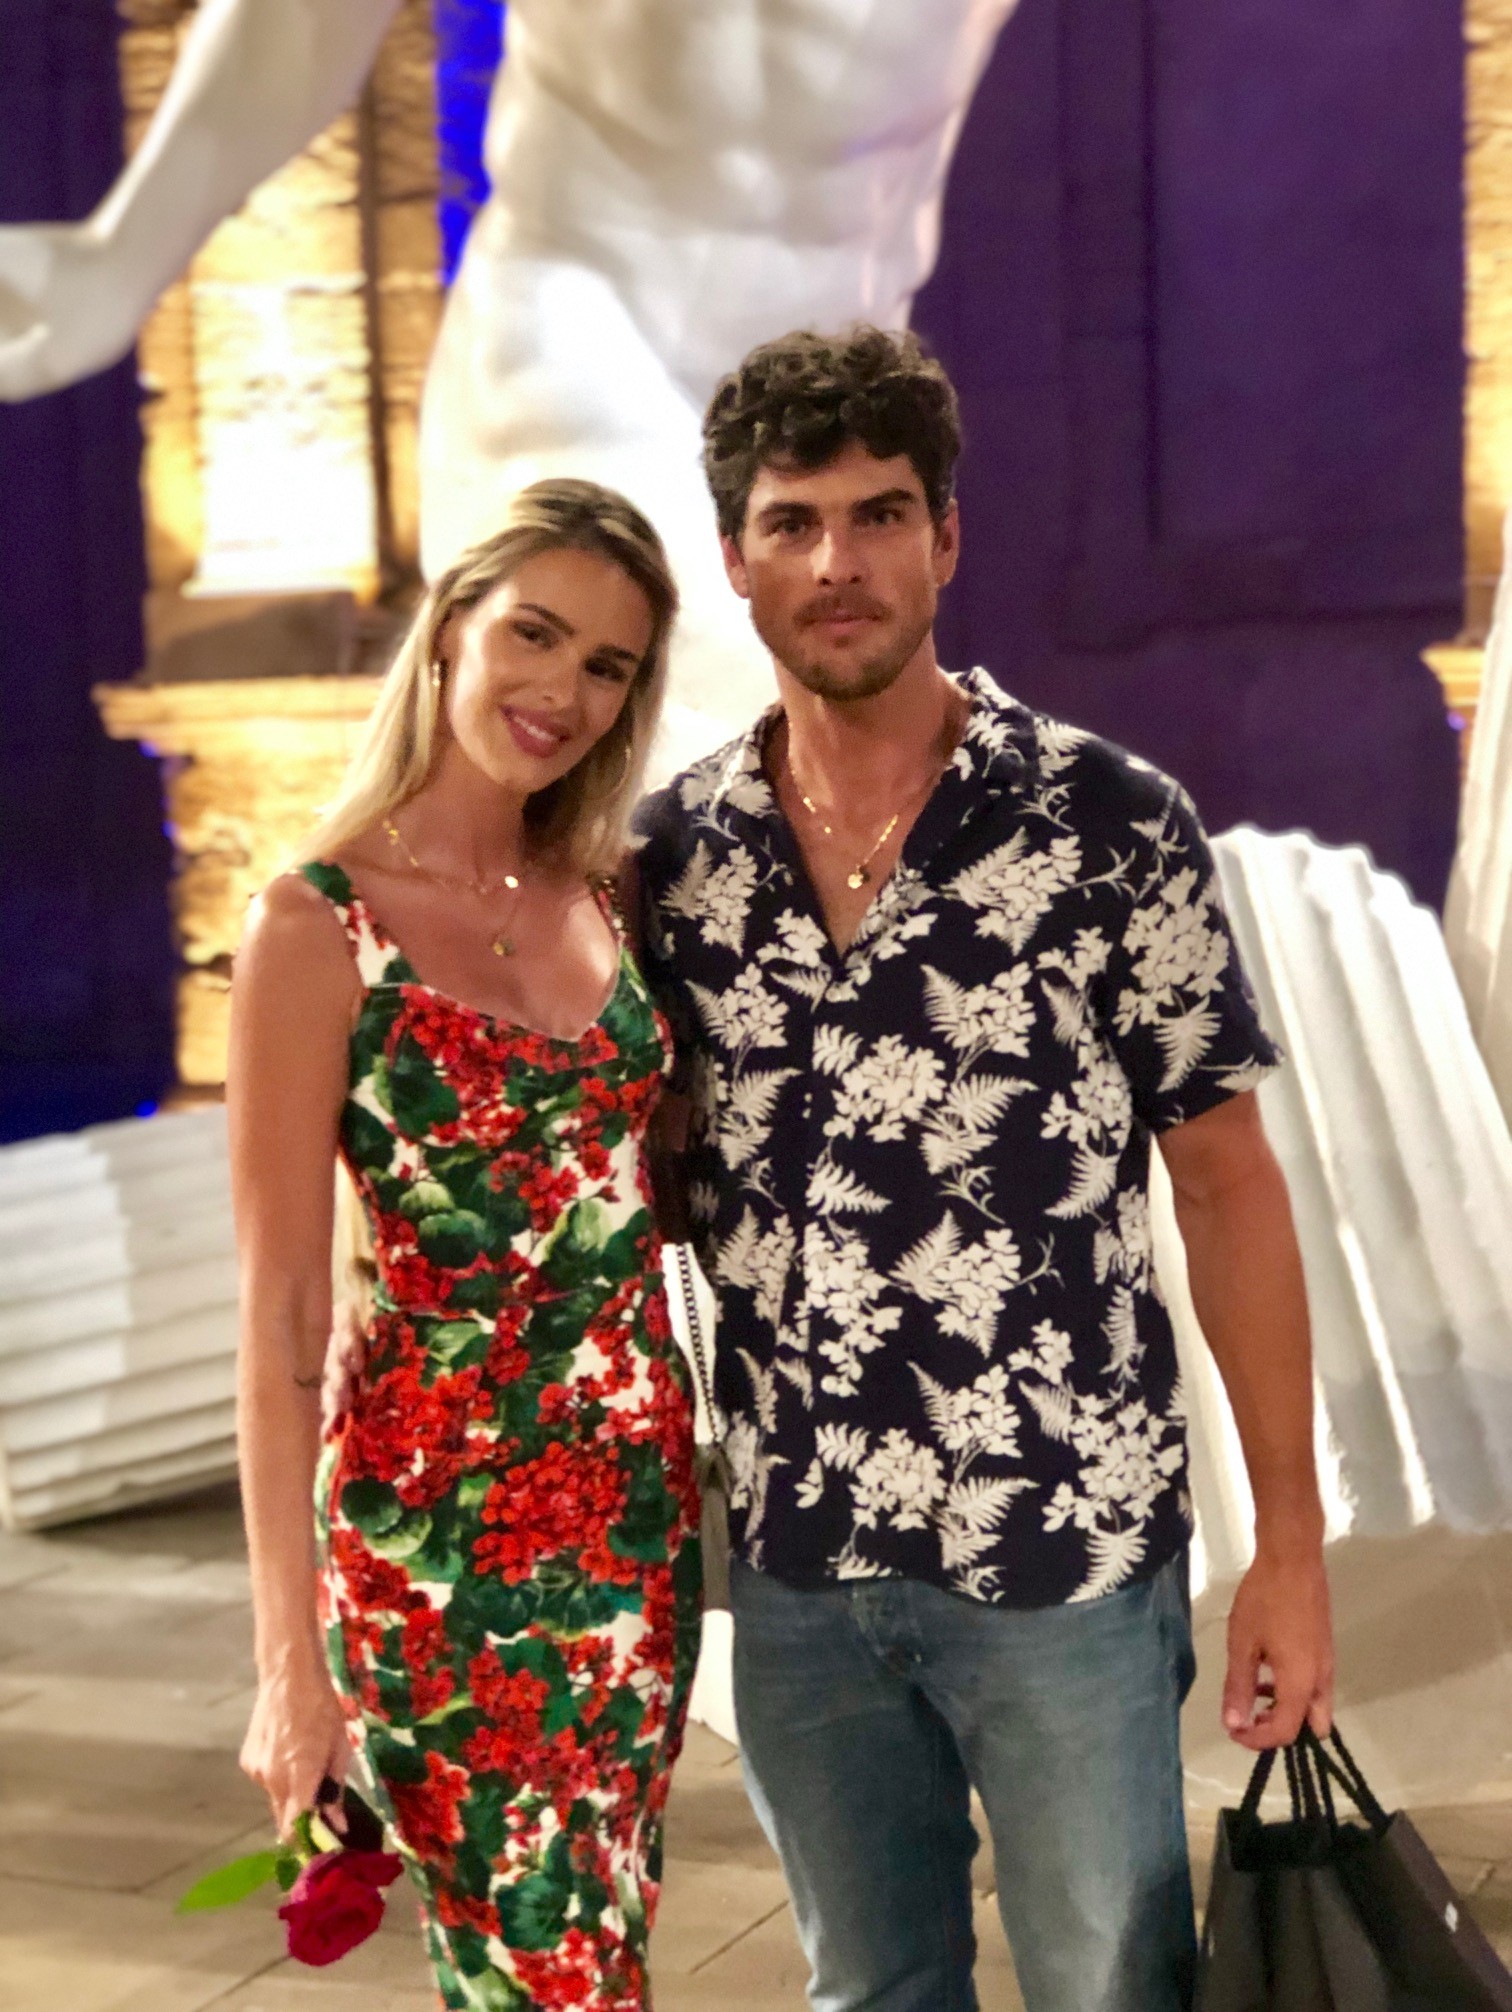 Em 2005, Yasmin Brunet começou um namoro com o modelo Evandro Soldati. Em julho de 2012, oficializaram a união — e se casaram, durante uma viagem a Ibiza, na Espanha. O relacionamento durou 15 anos e chegou ao fim em 2020 — Foto: Divulgação